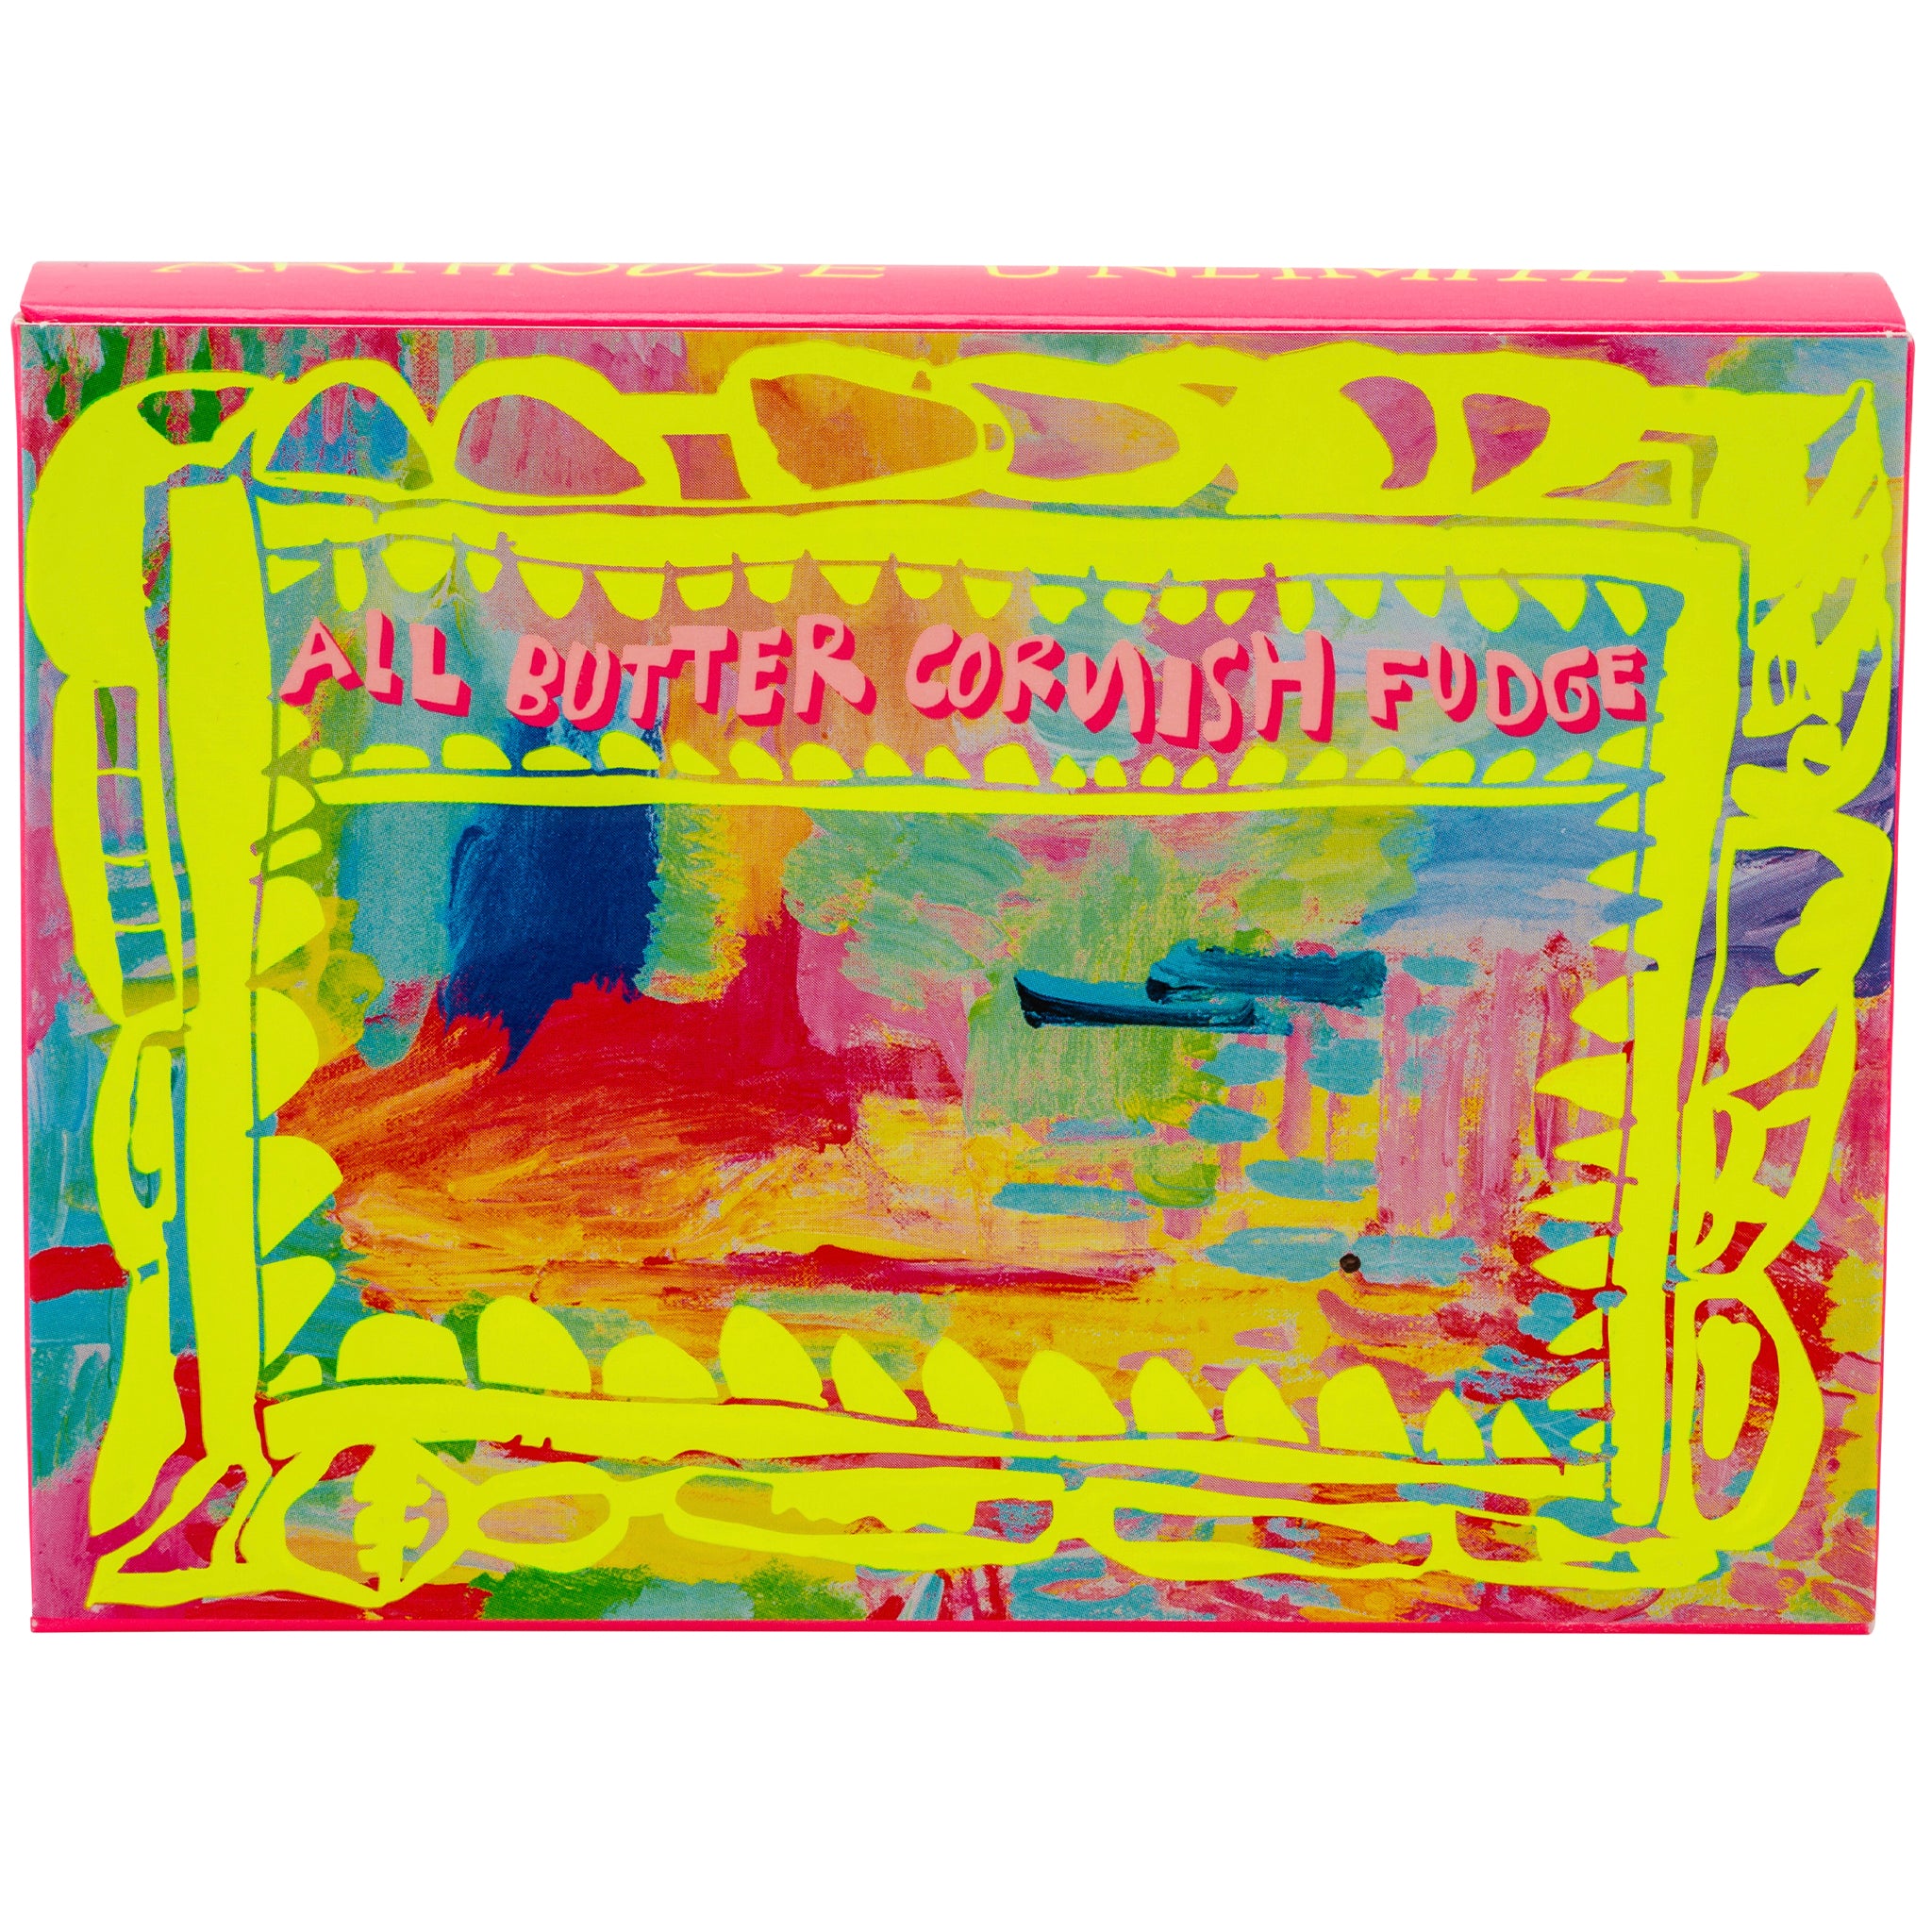 Bright coloured box of Colour Sugar All Butter Cornish Fudge